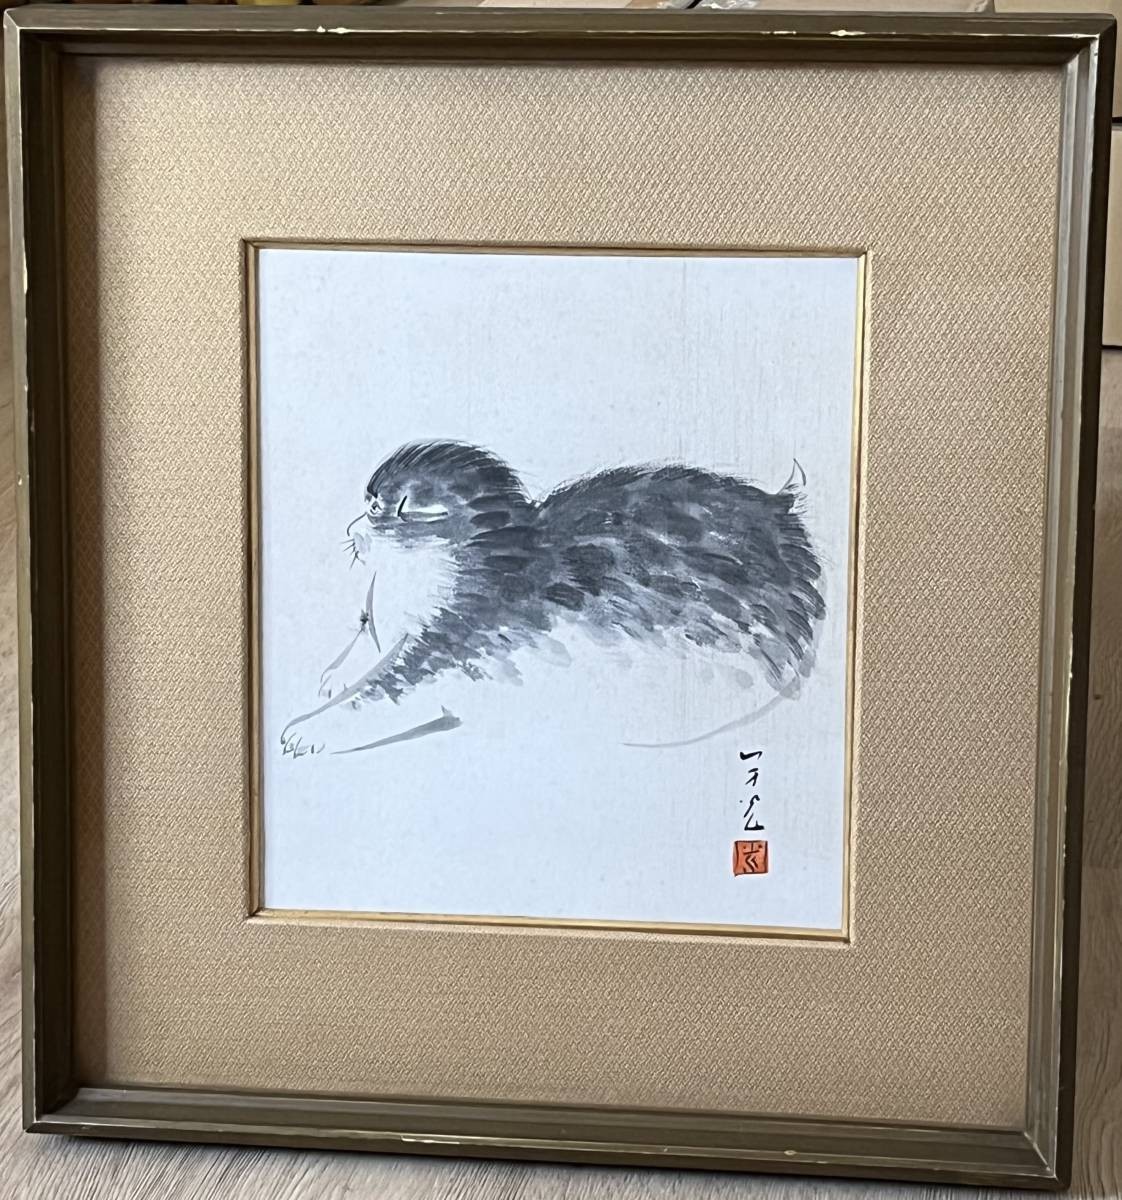 [Enmarcado] Pintura de animales, papel de colores, gato firmado. Tamaño del marco [Alto: 44, 5 cm x Ancho: 41, 5 cm x Grosor: 4, 5 cm] (KM25E136), Cuadro, pintura japonesa, Flores y pájaros, Fauna silvestre